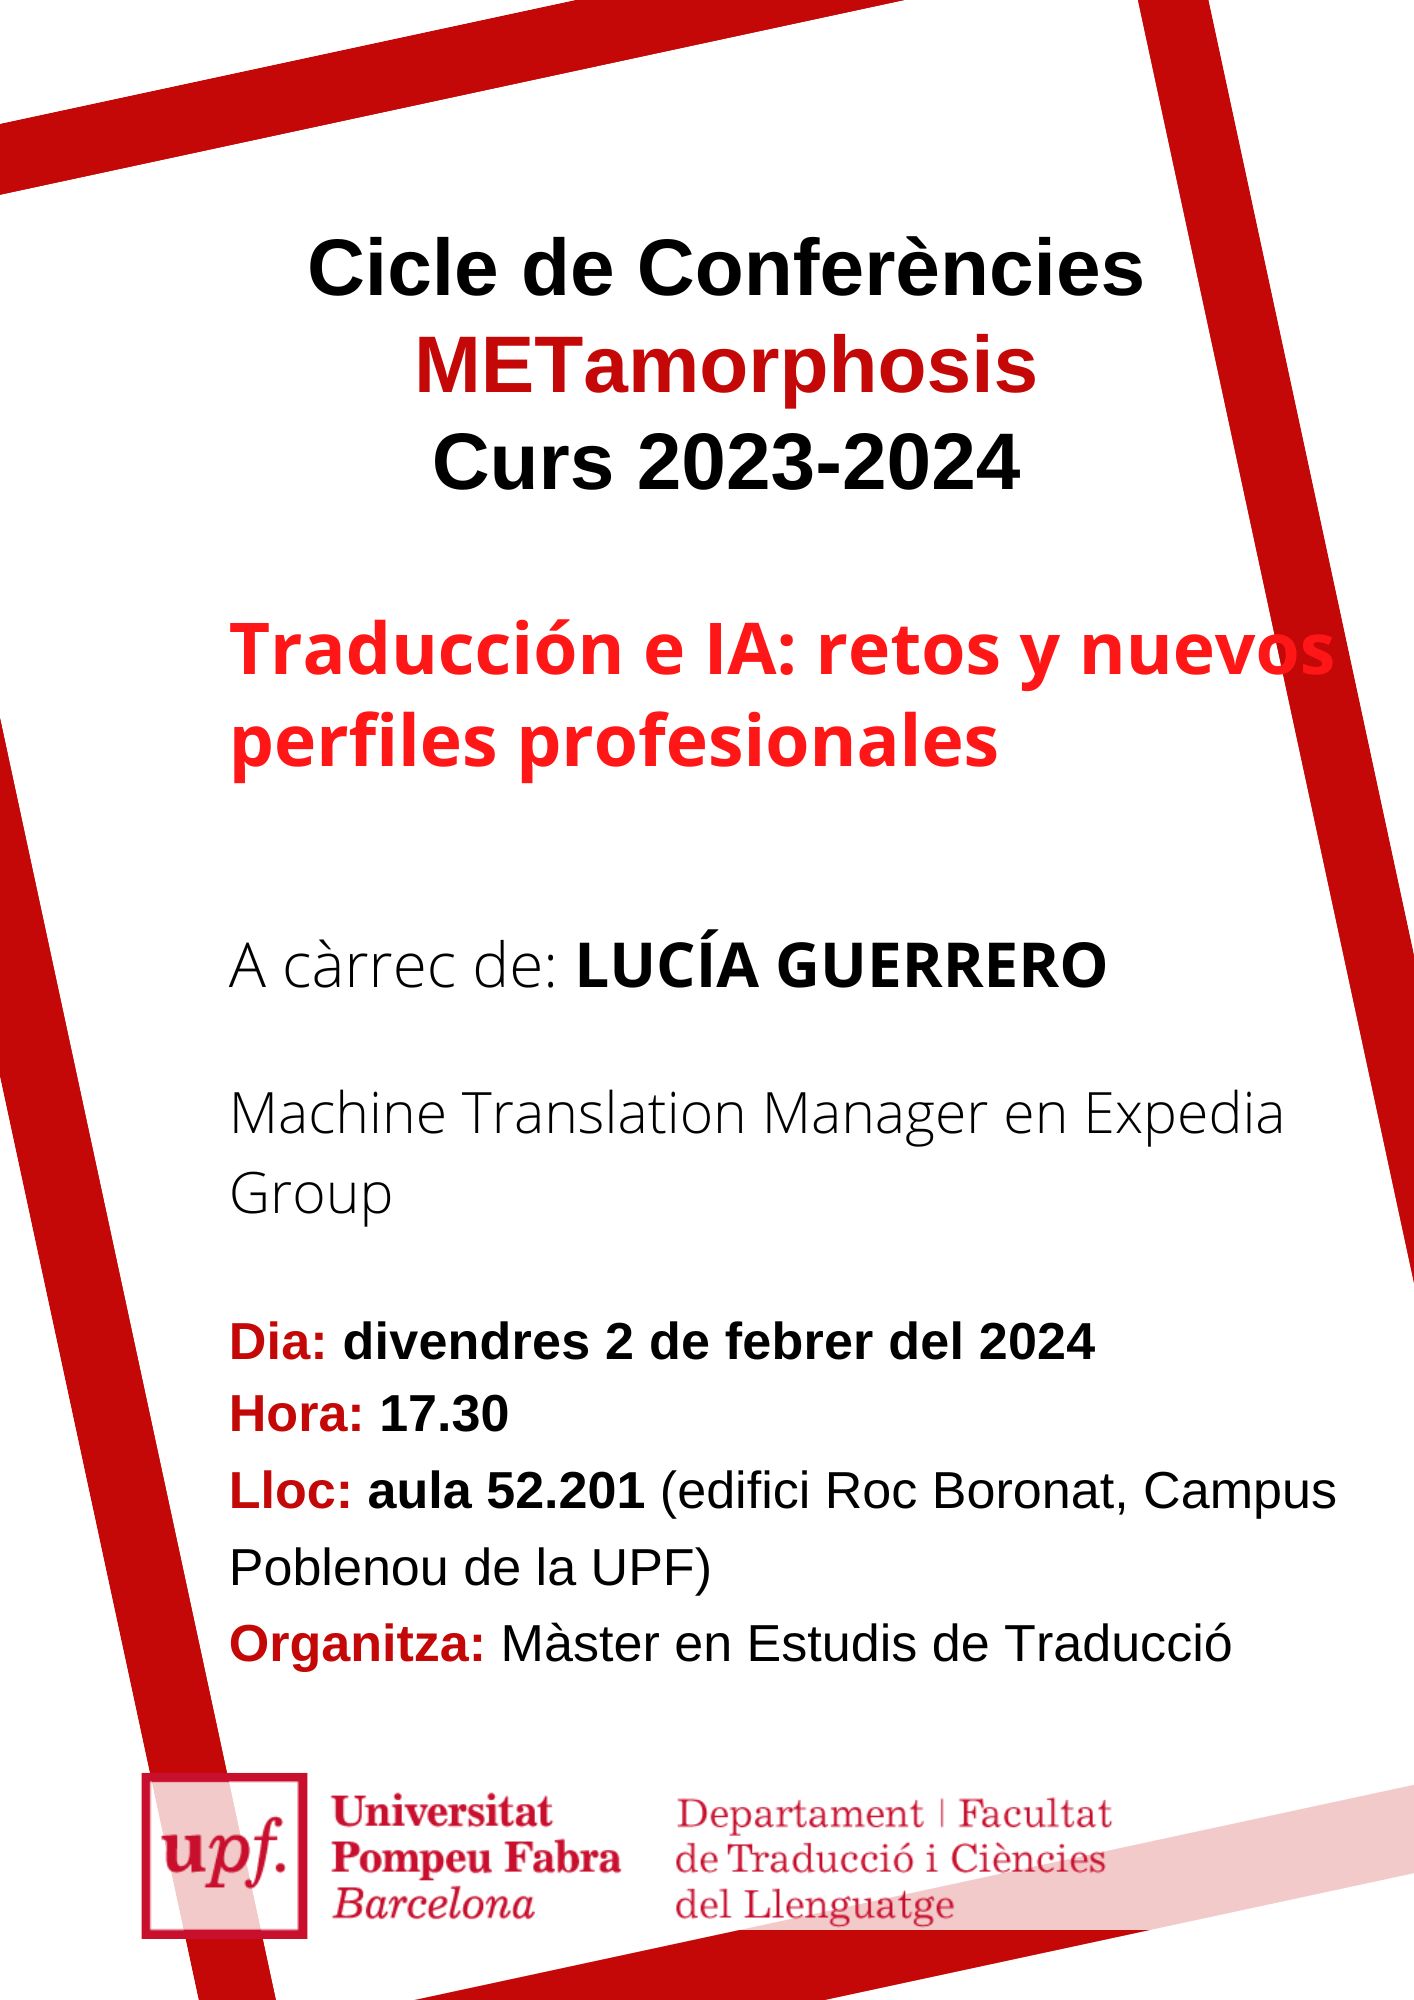 2/02/2024 Conferència del cicle METamorphosis, a càrrec de Lucía Guerrero